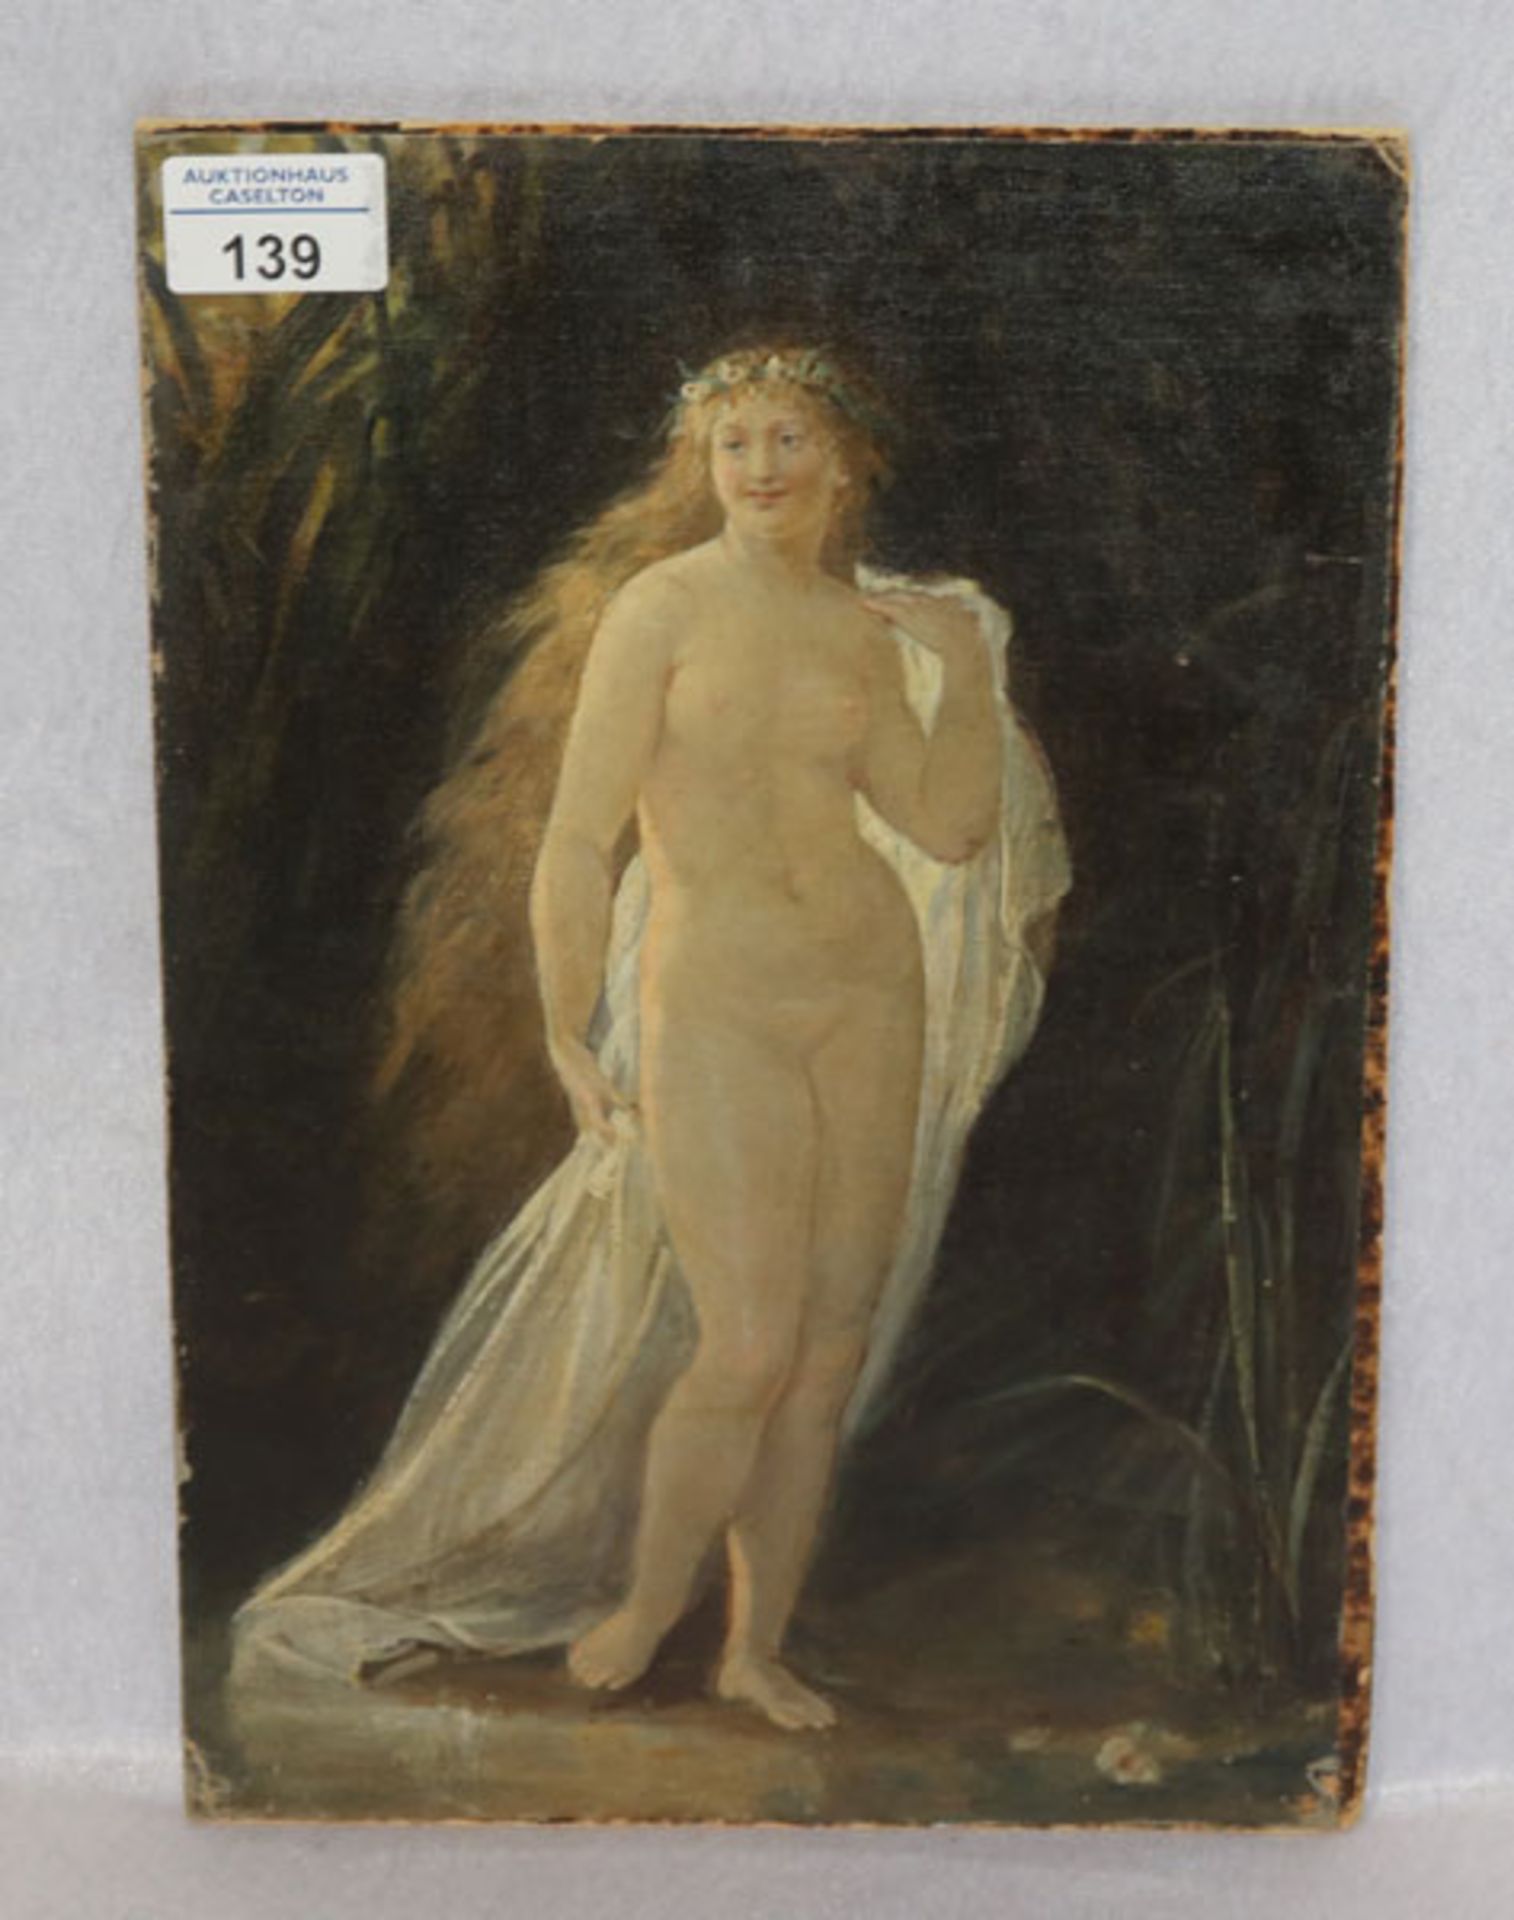 Gemälde ÖL/LW auf Malkarton geklebt 'Stehender Frauenakt', teils beschädigt, ohne Rahmen 32 cm x